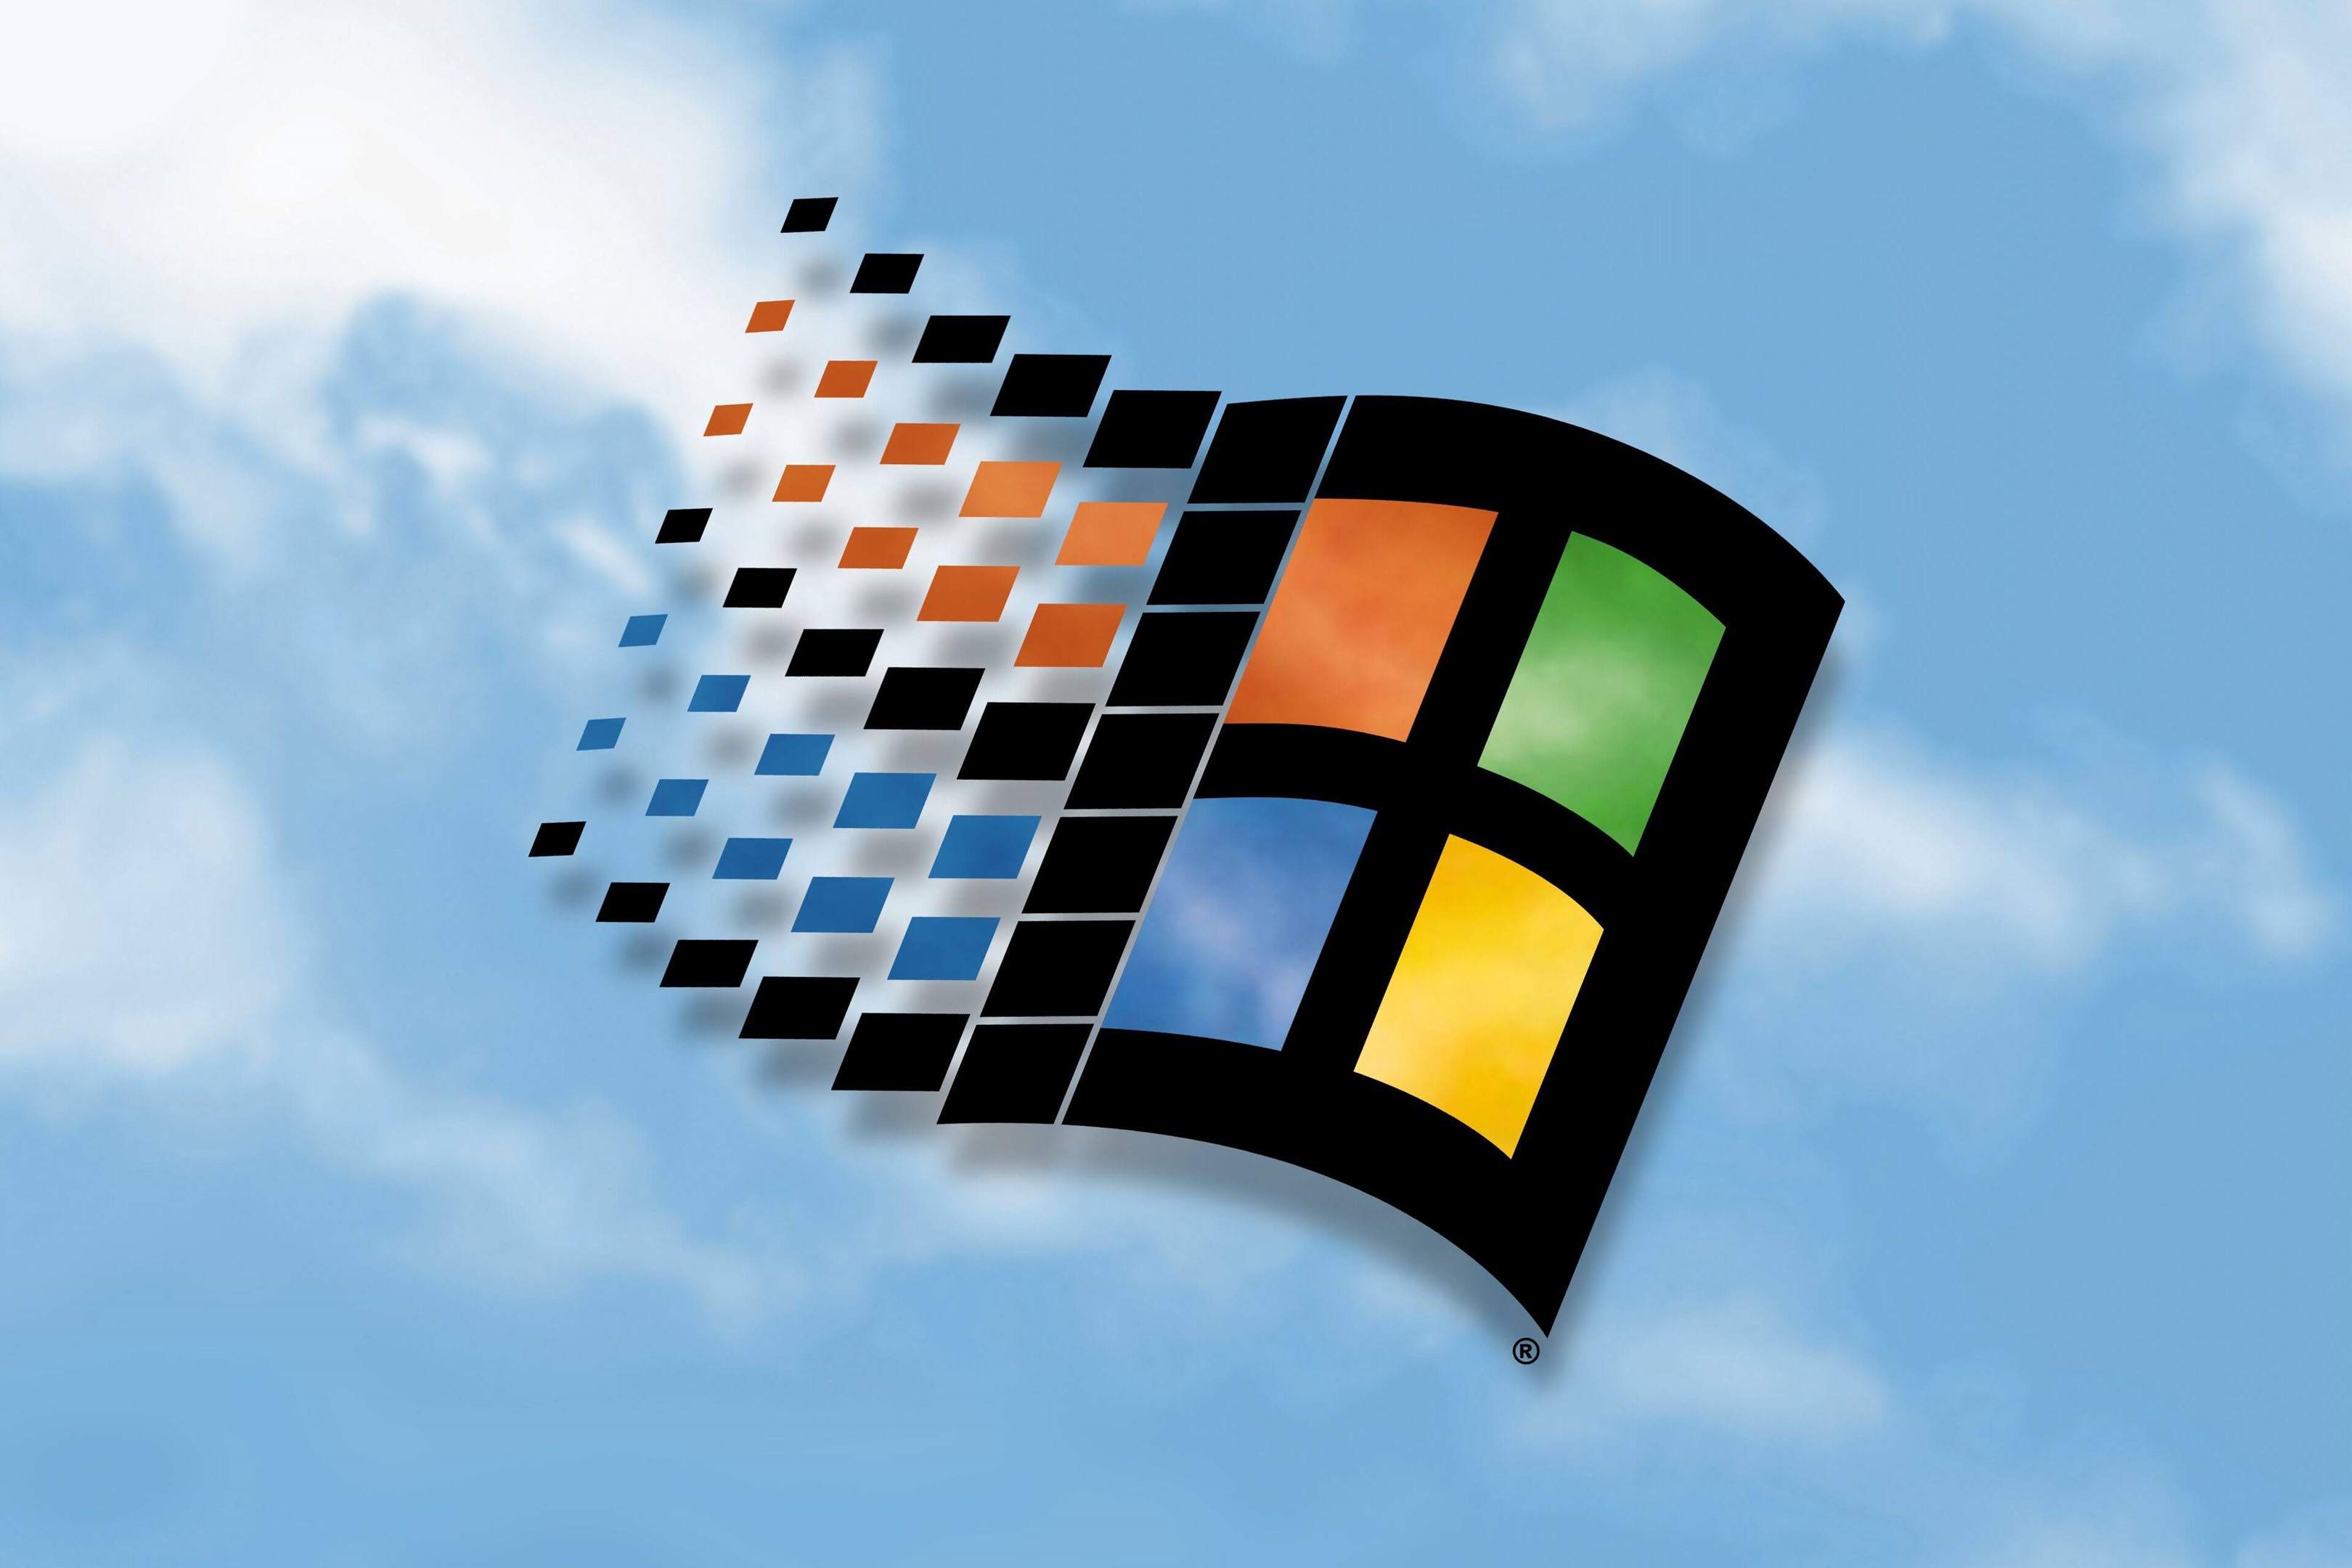 Một thương hiệu toàn cầu và đầy uy tín như Microsoft không cần nhiều lời giới thiệu. Nếu bạn là fan của hệ điều hành Windows 98, hãy đến với WallpaperHub để khám phá thêm nhiều hình nền độc đáo và đẹp mắt cho máy tính của mình.